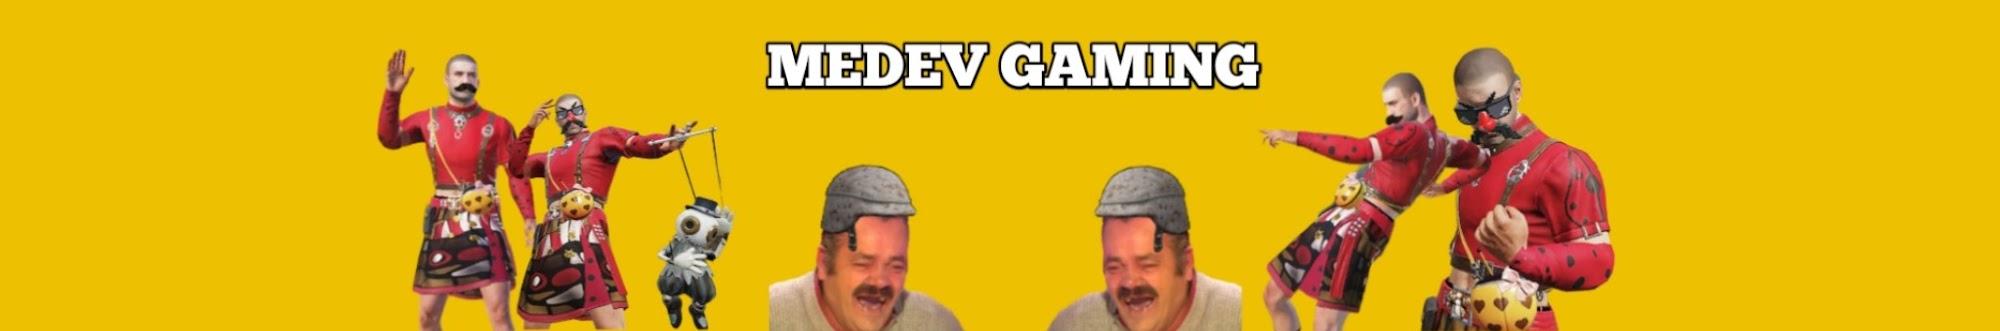 Medev Gaming